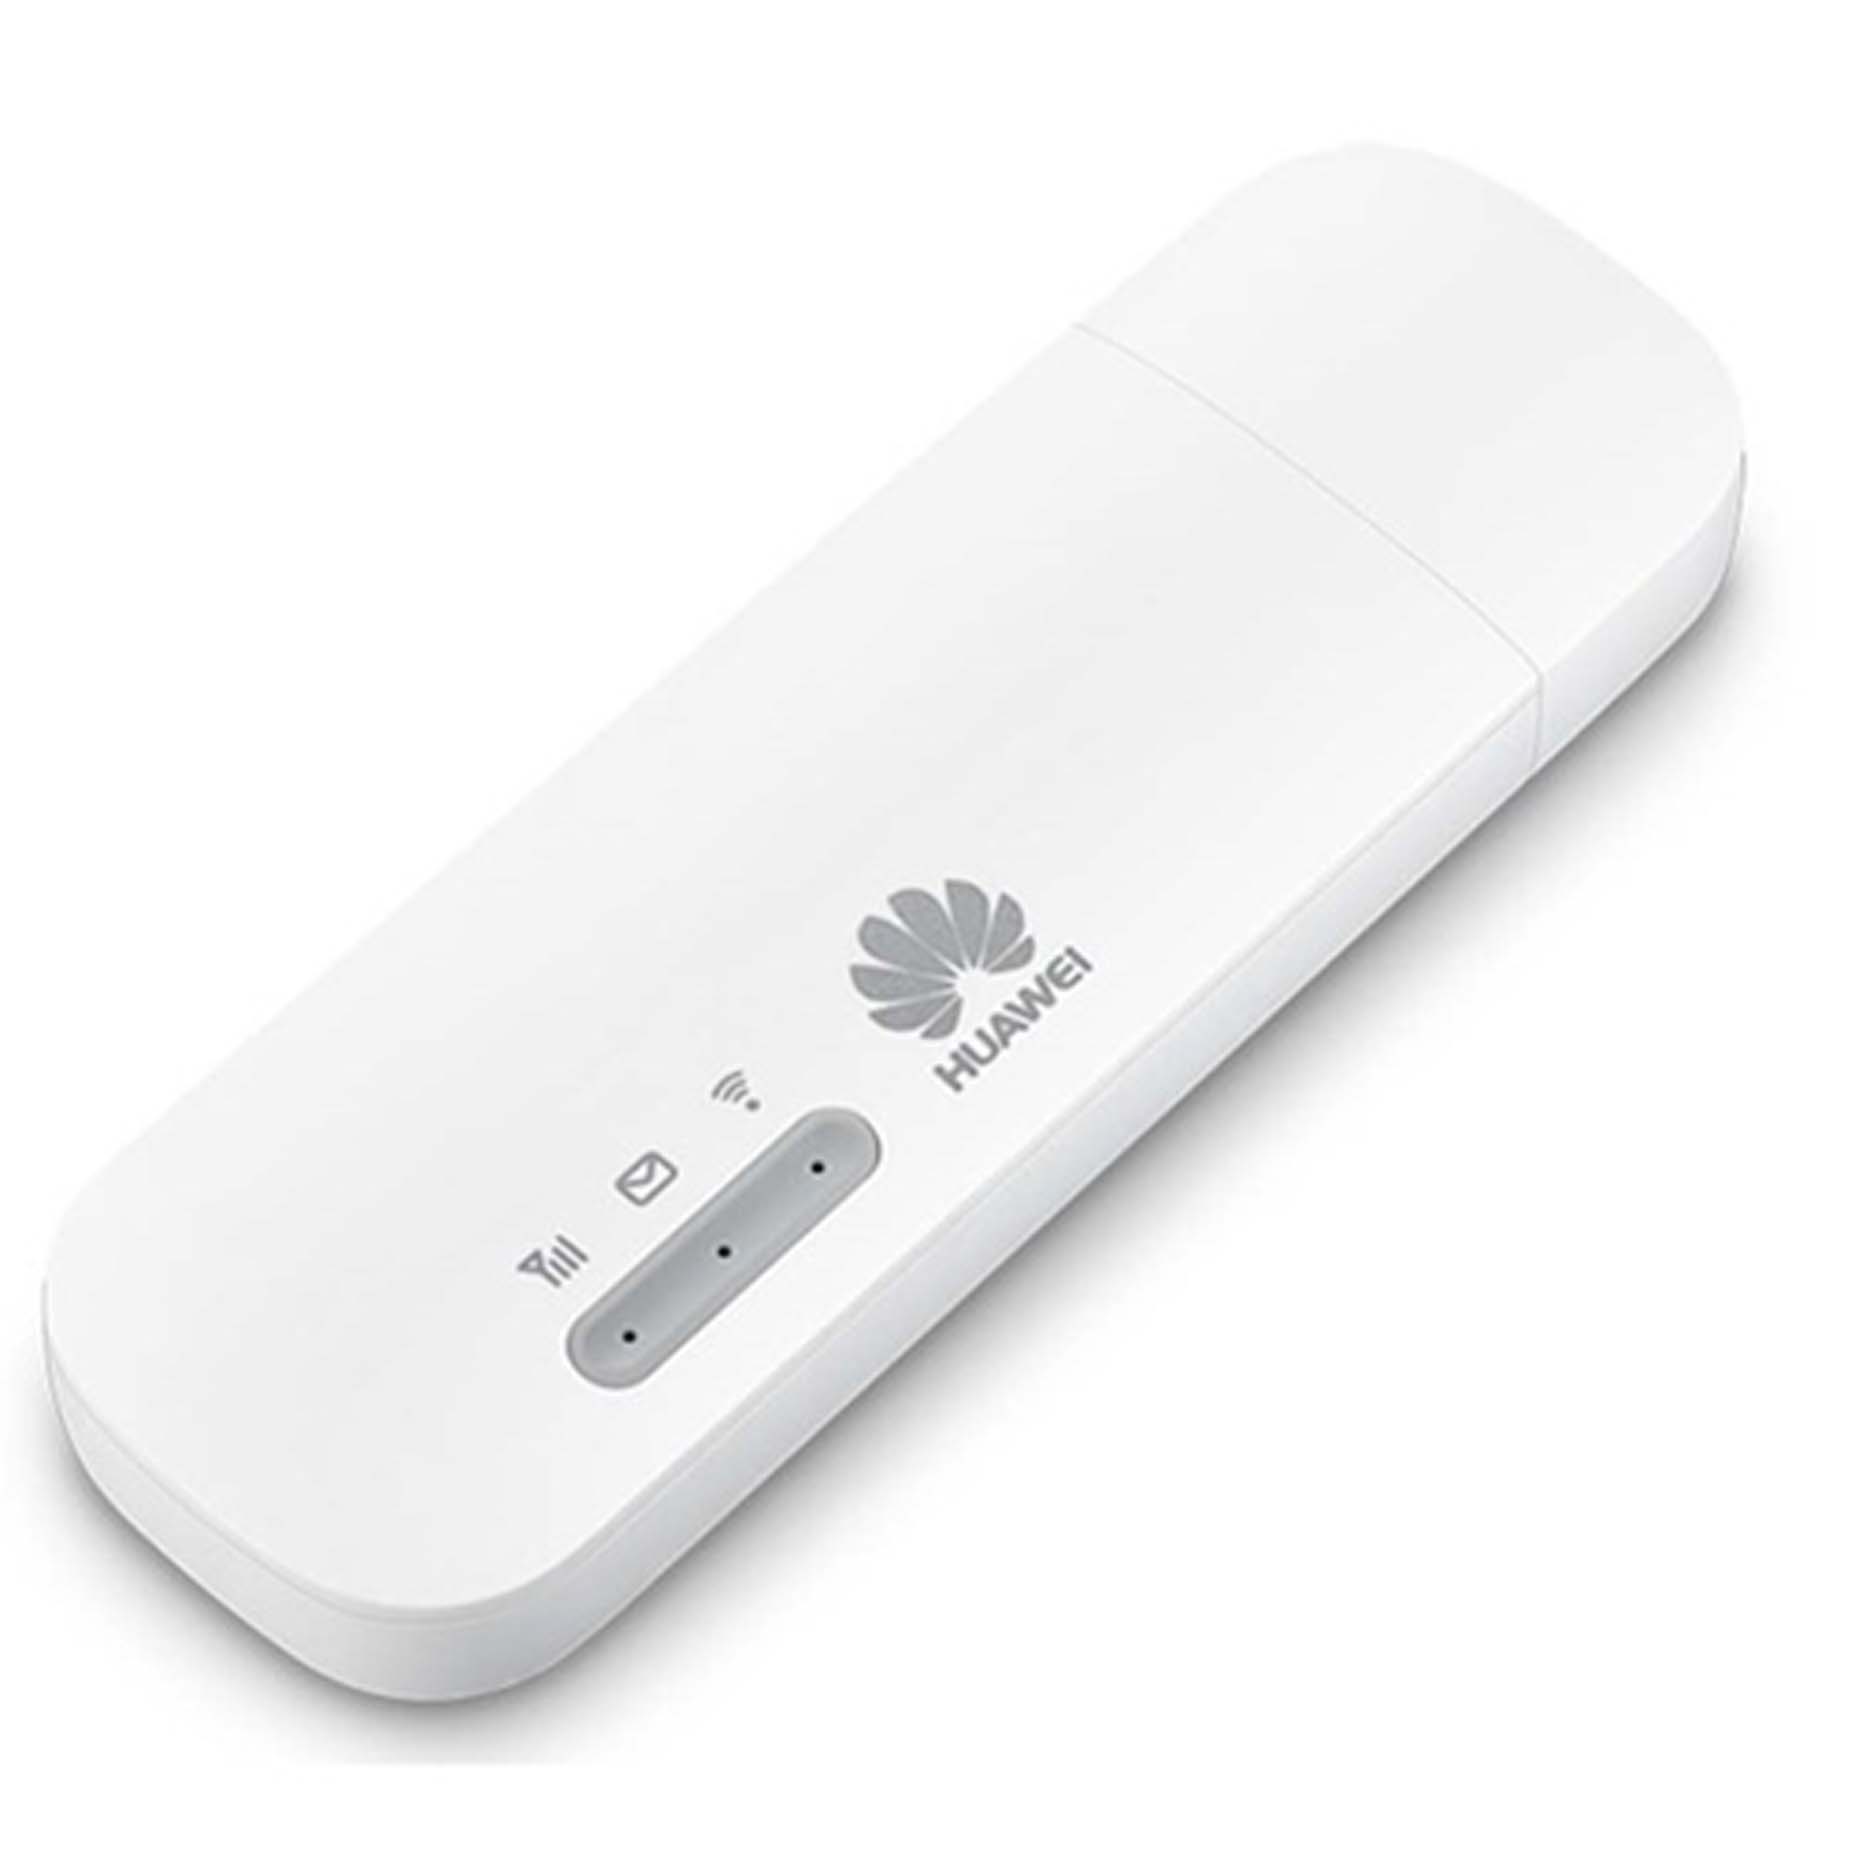 Harga Huawei E8372 4G LTE 150Mbps Unlock USB Modem